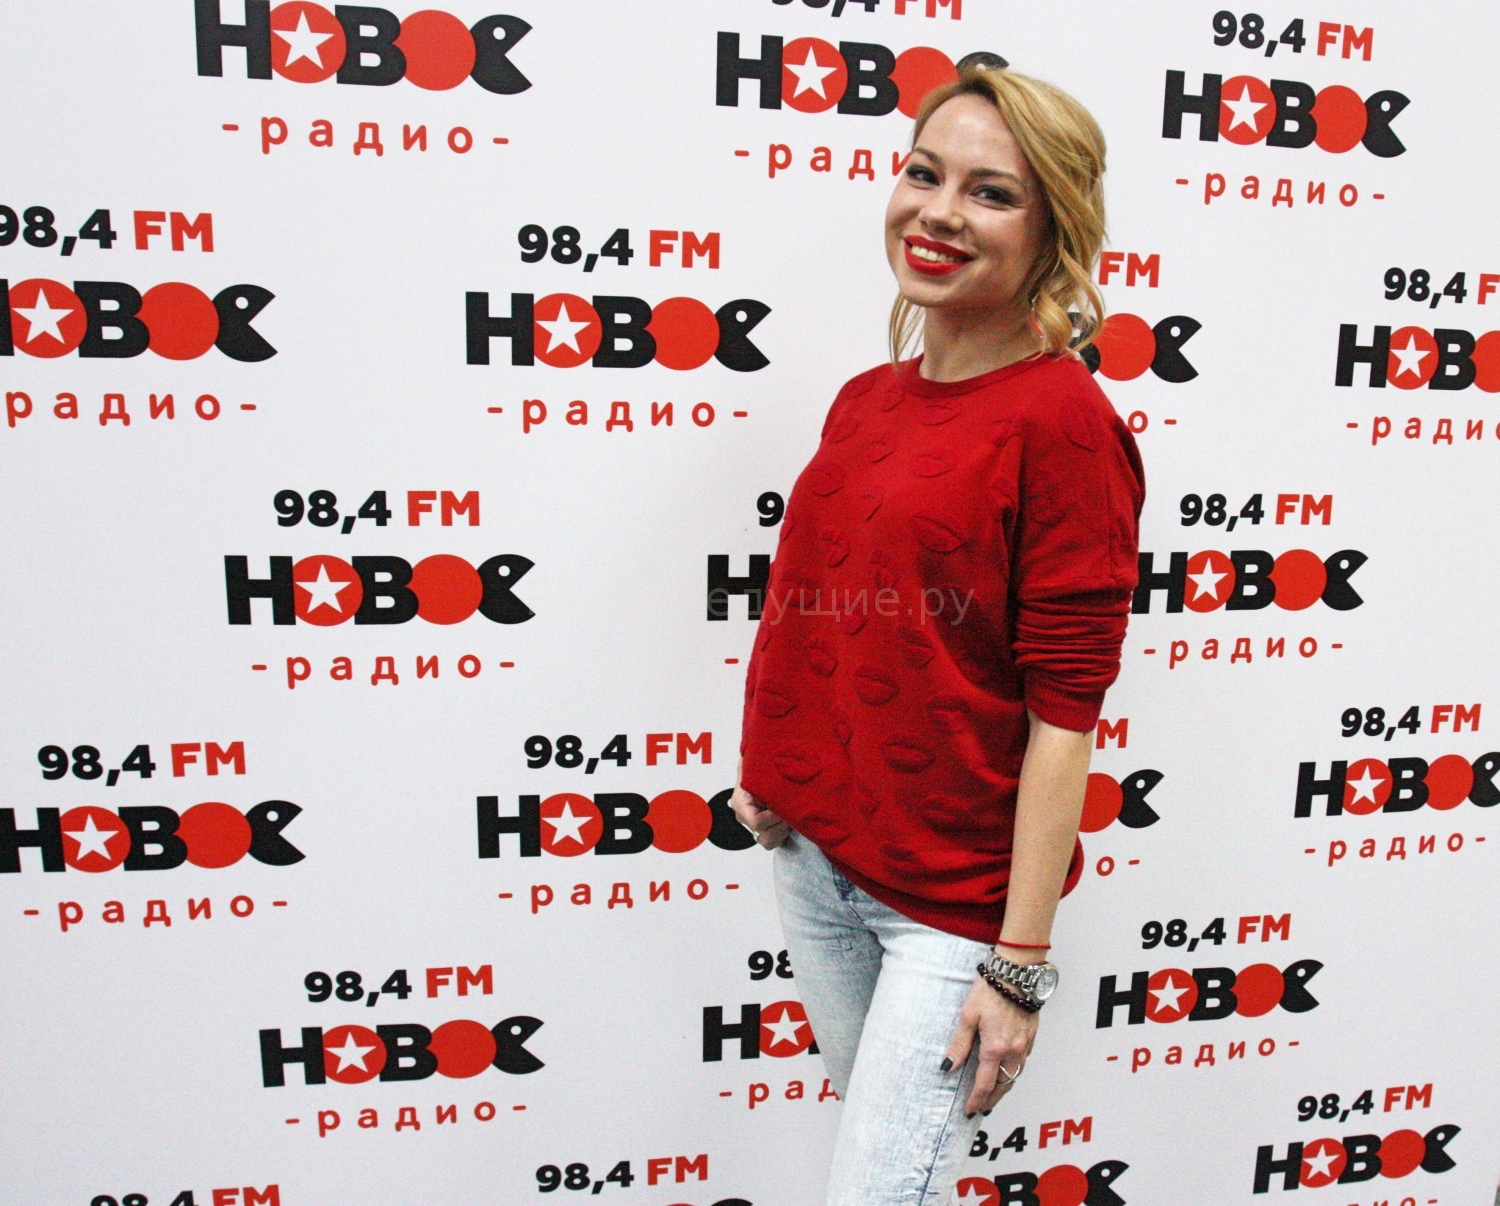 На фото - утренняя радиоведущая Нового Радио Алиса Селезнева